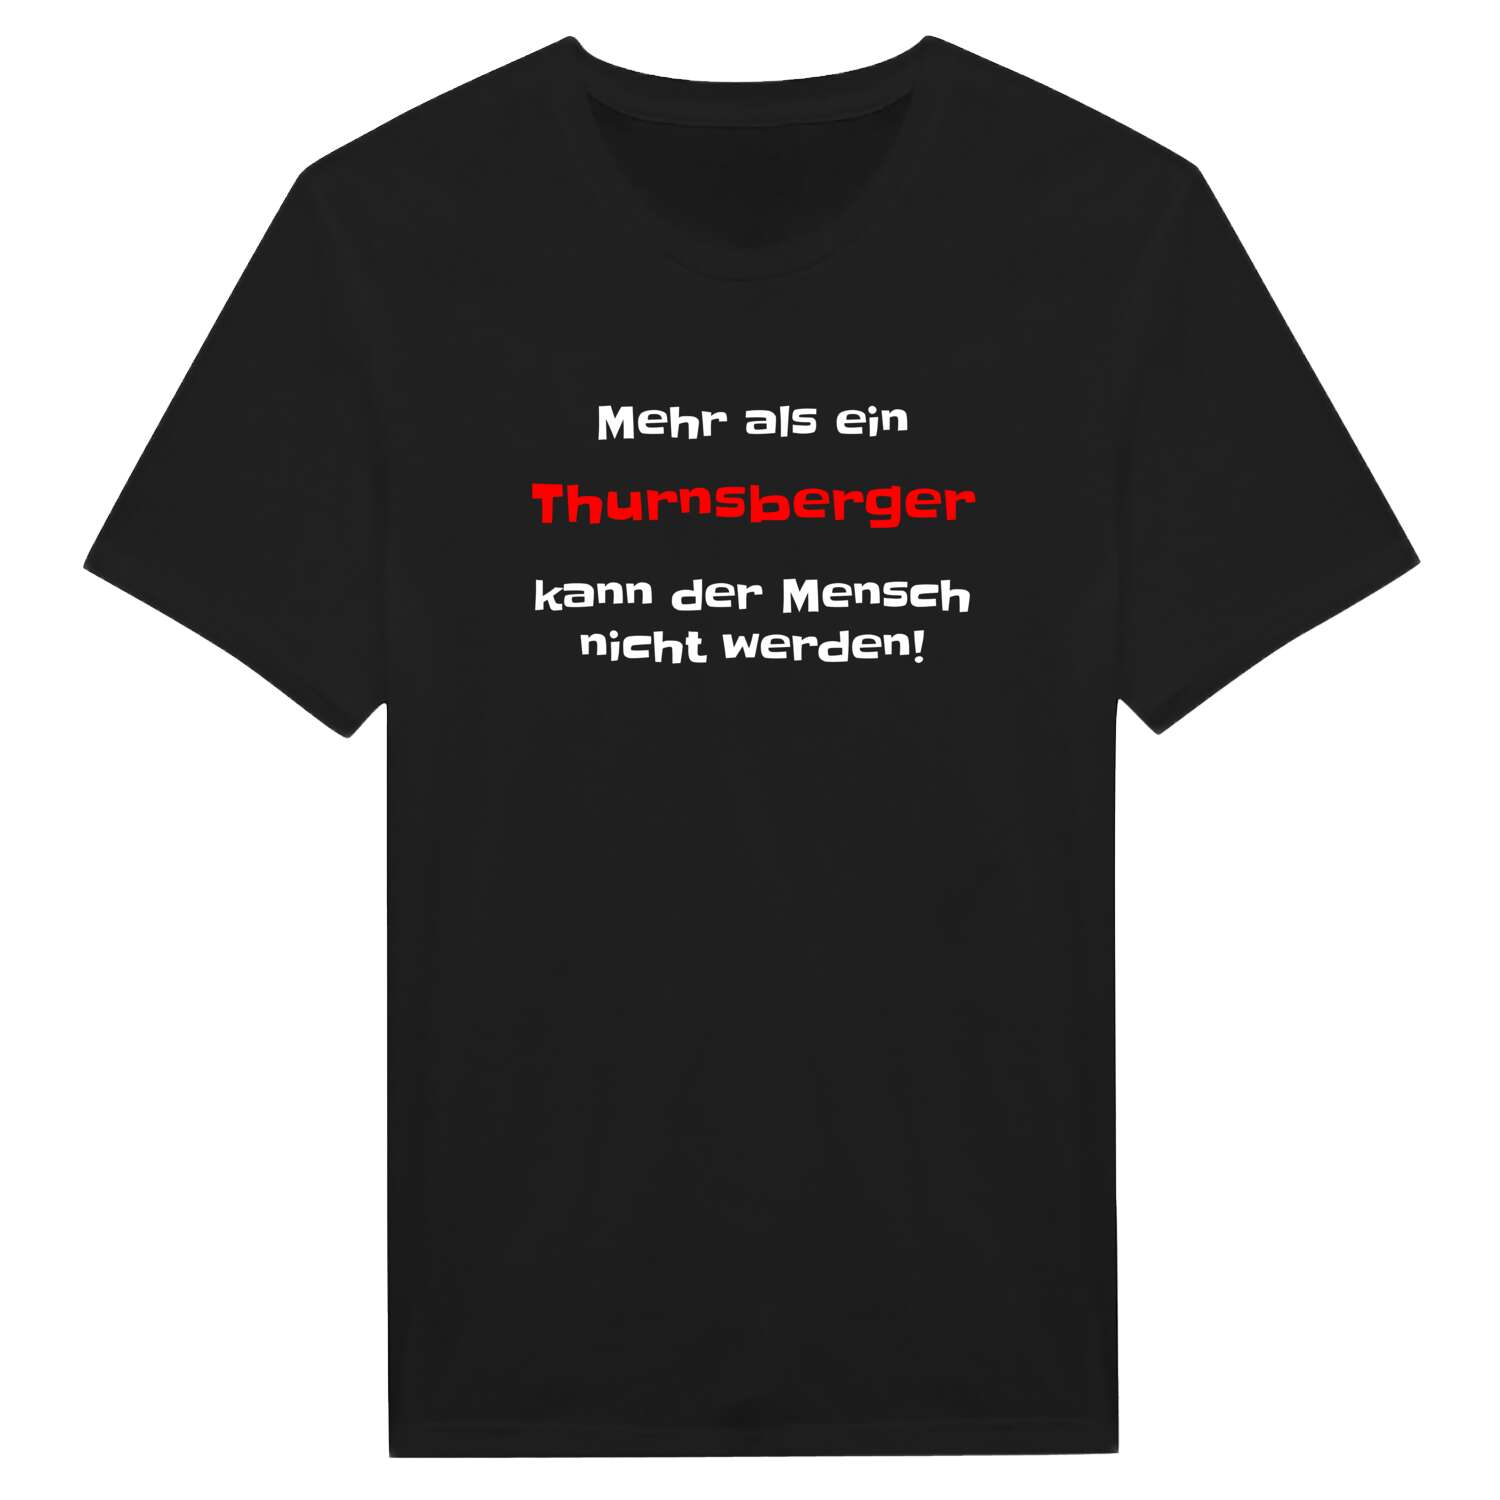 Thurnsberg T-Shirt »Mehr als ein«